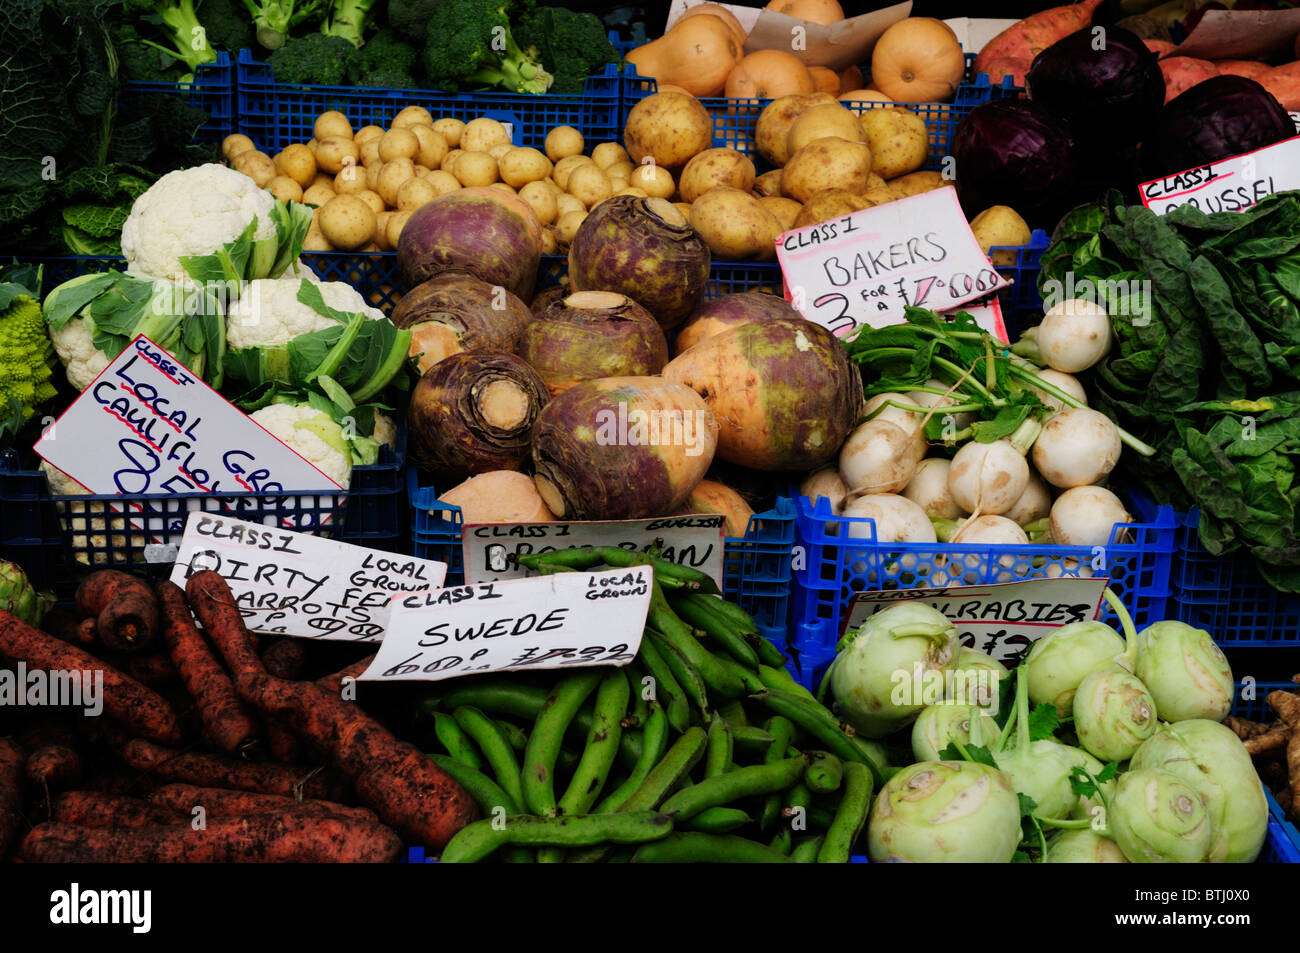 Stallo vegetale sul mercato, Cambridge, Inghilterra, Regno Unito Foto Stock